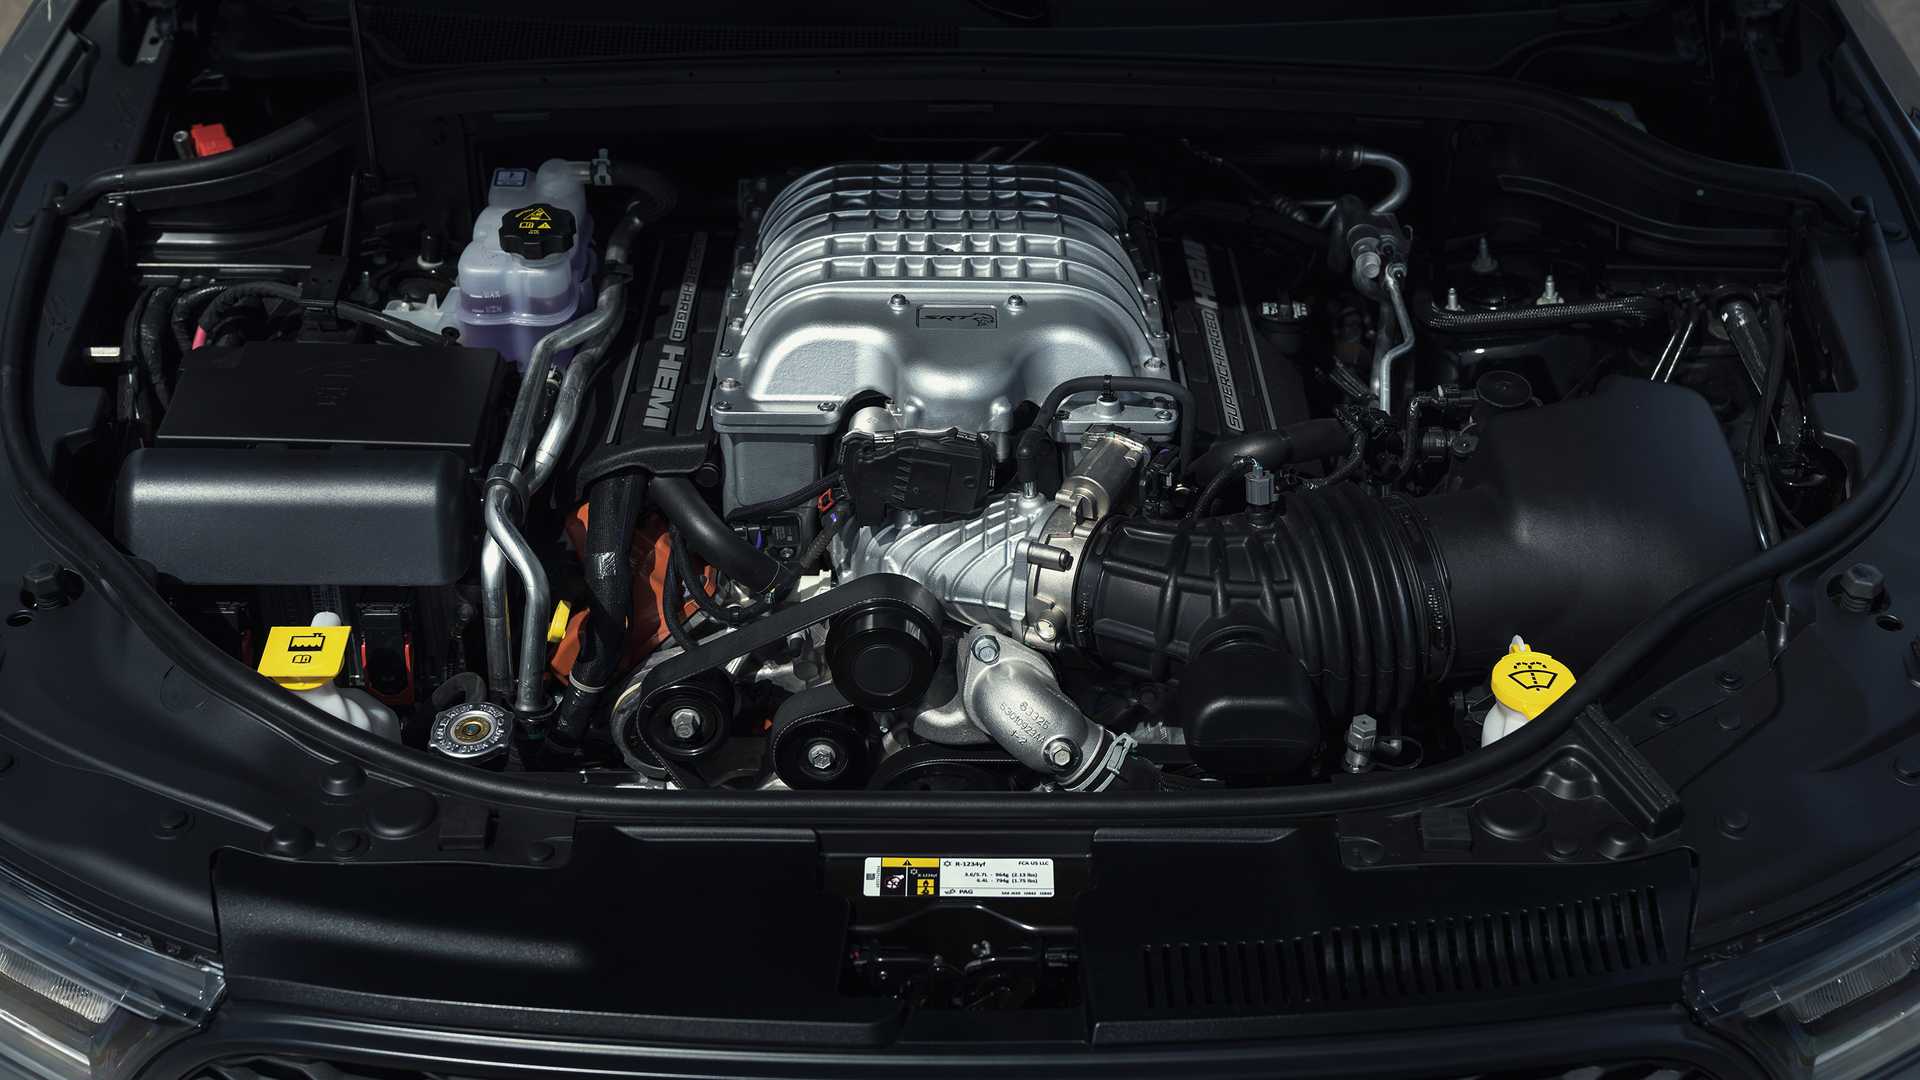 دودج تكشف عن دورانجو SRT هيلكات 2021 كأقوى SUV في العالم 73